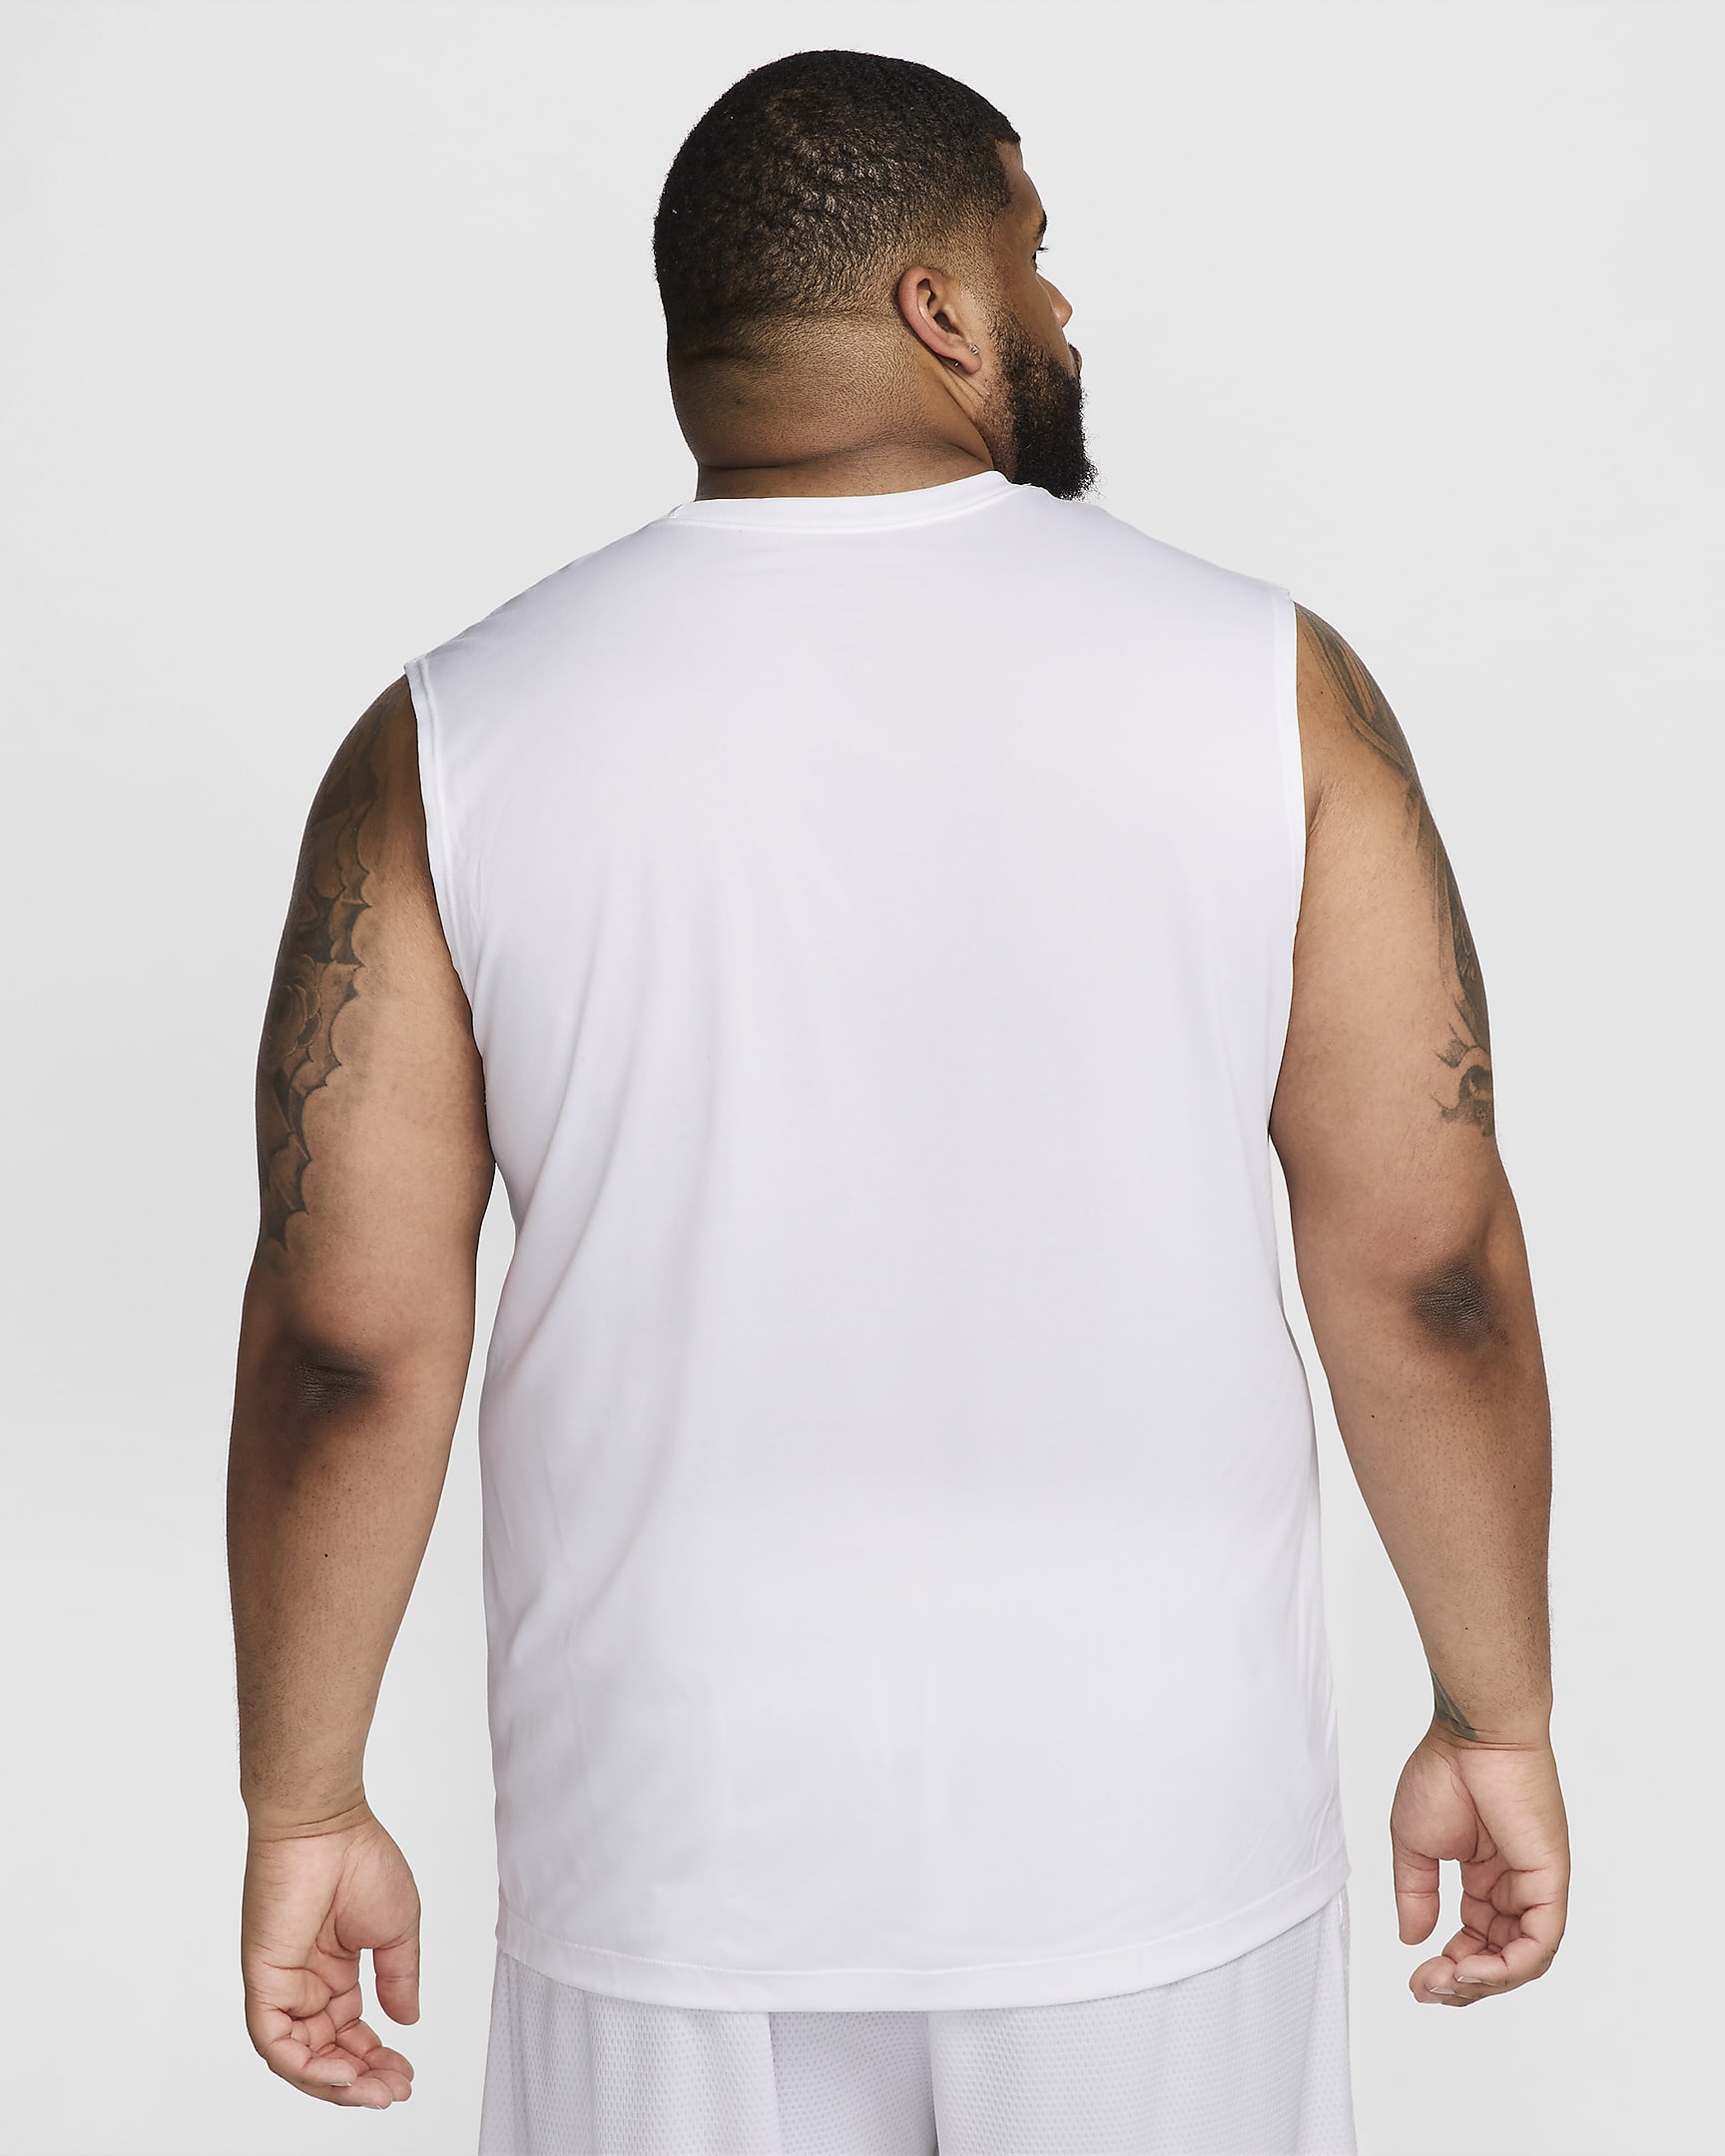 Nike Men's Dri-FIT Sleeveless Basketball T-Shirt. Nike.com